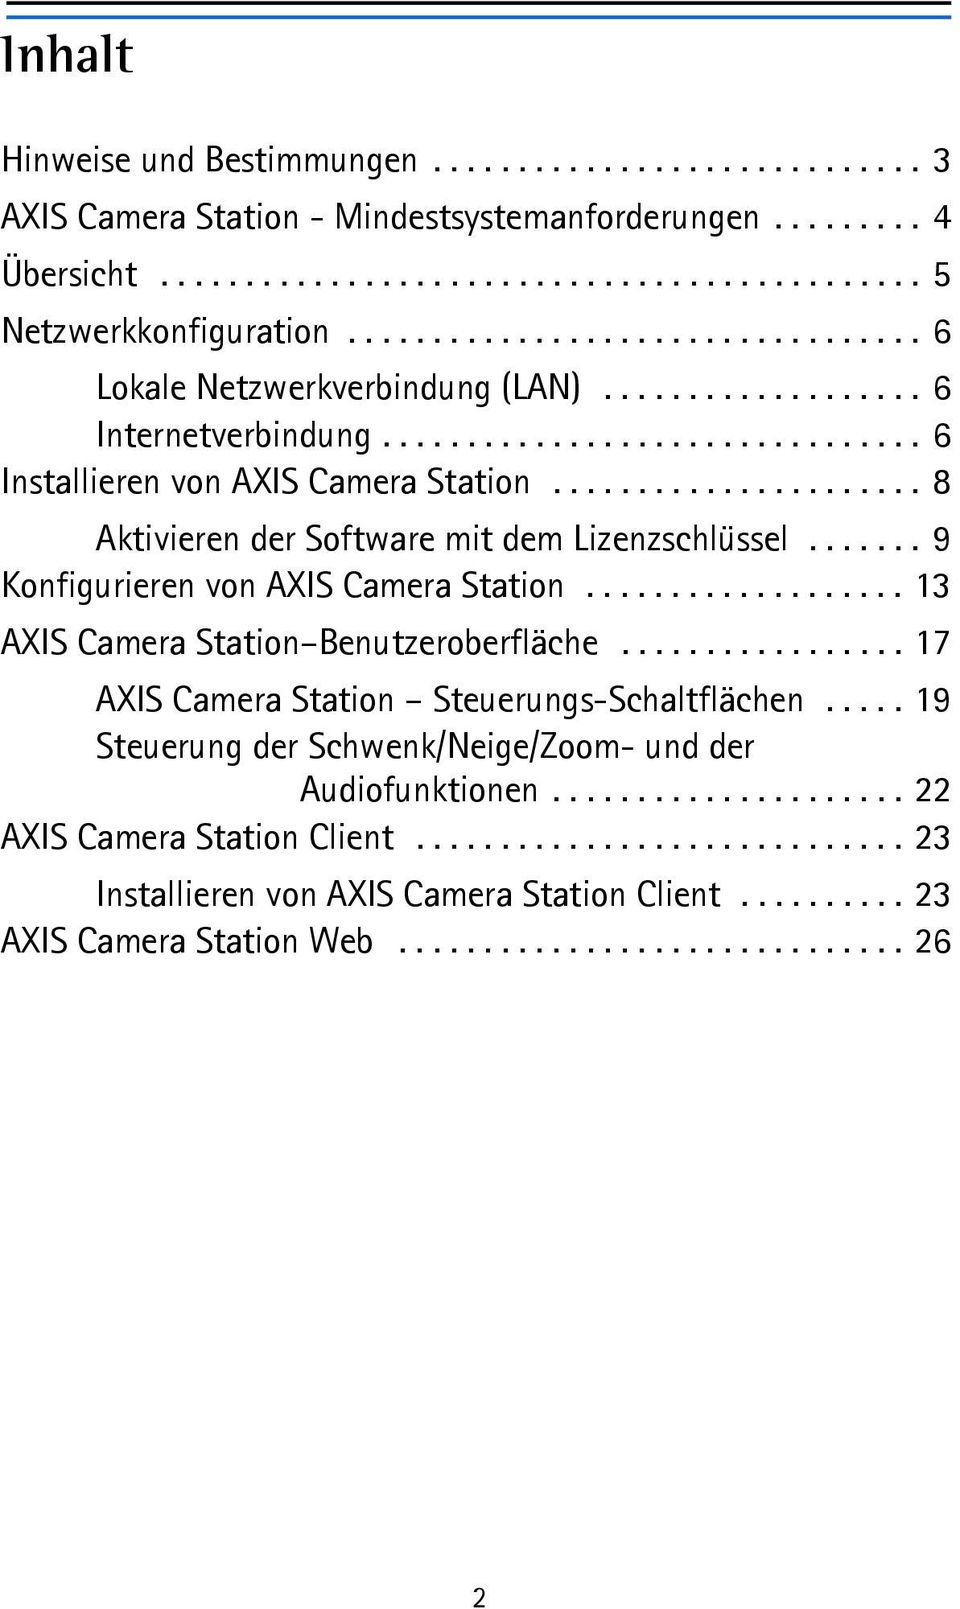 ..................... 8 Aktivieren der Software mit dem Lizenzschlüssel....... 9 Konfigurieren von AXIS Camera Station................... 13 AXIS Camera Station Benutzeroberfläche.